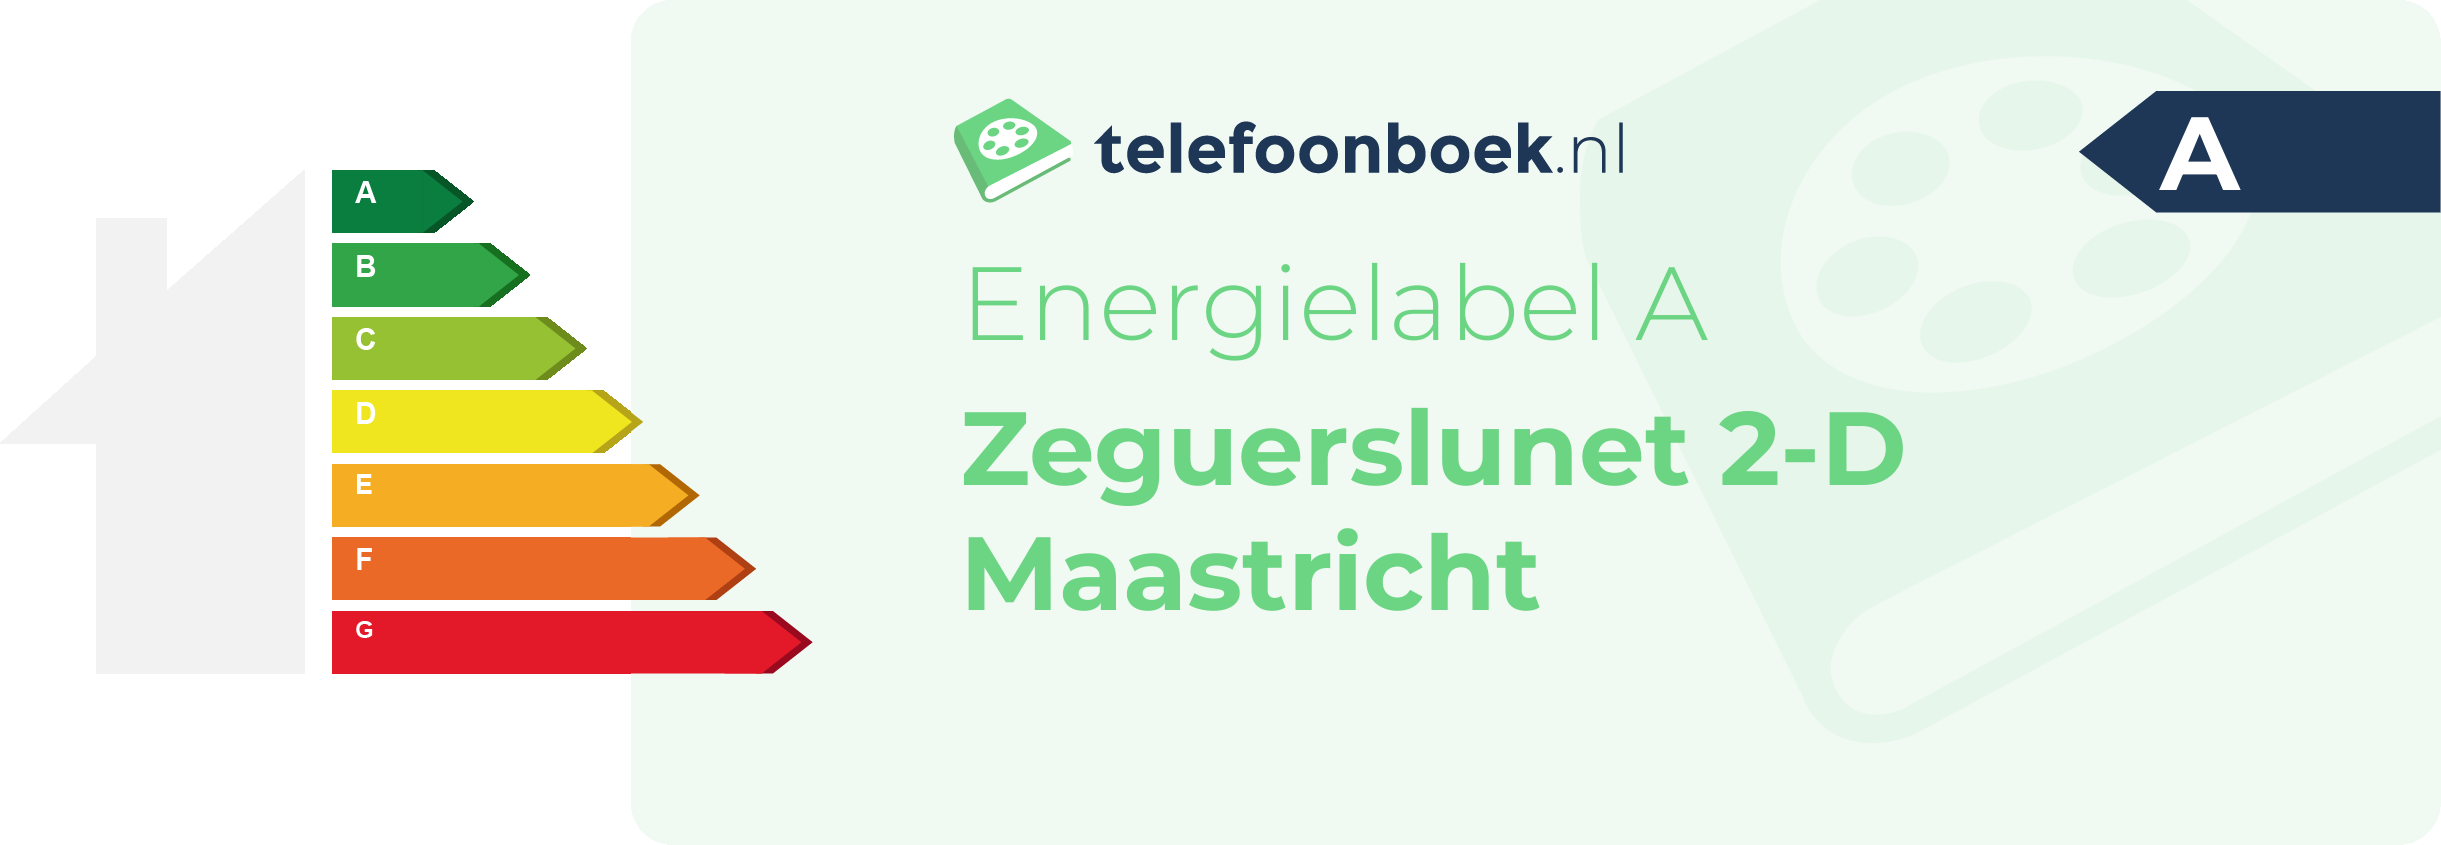 Energielabel Zeguerslunet 2-D Maastricht